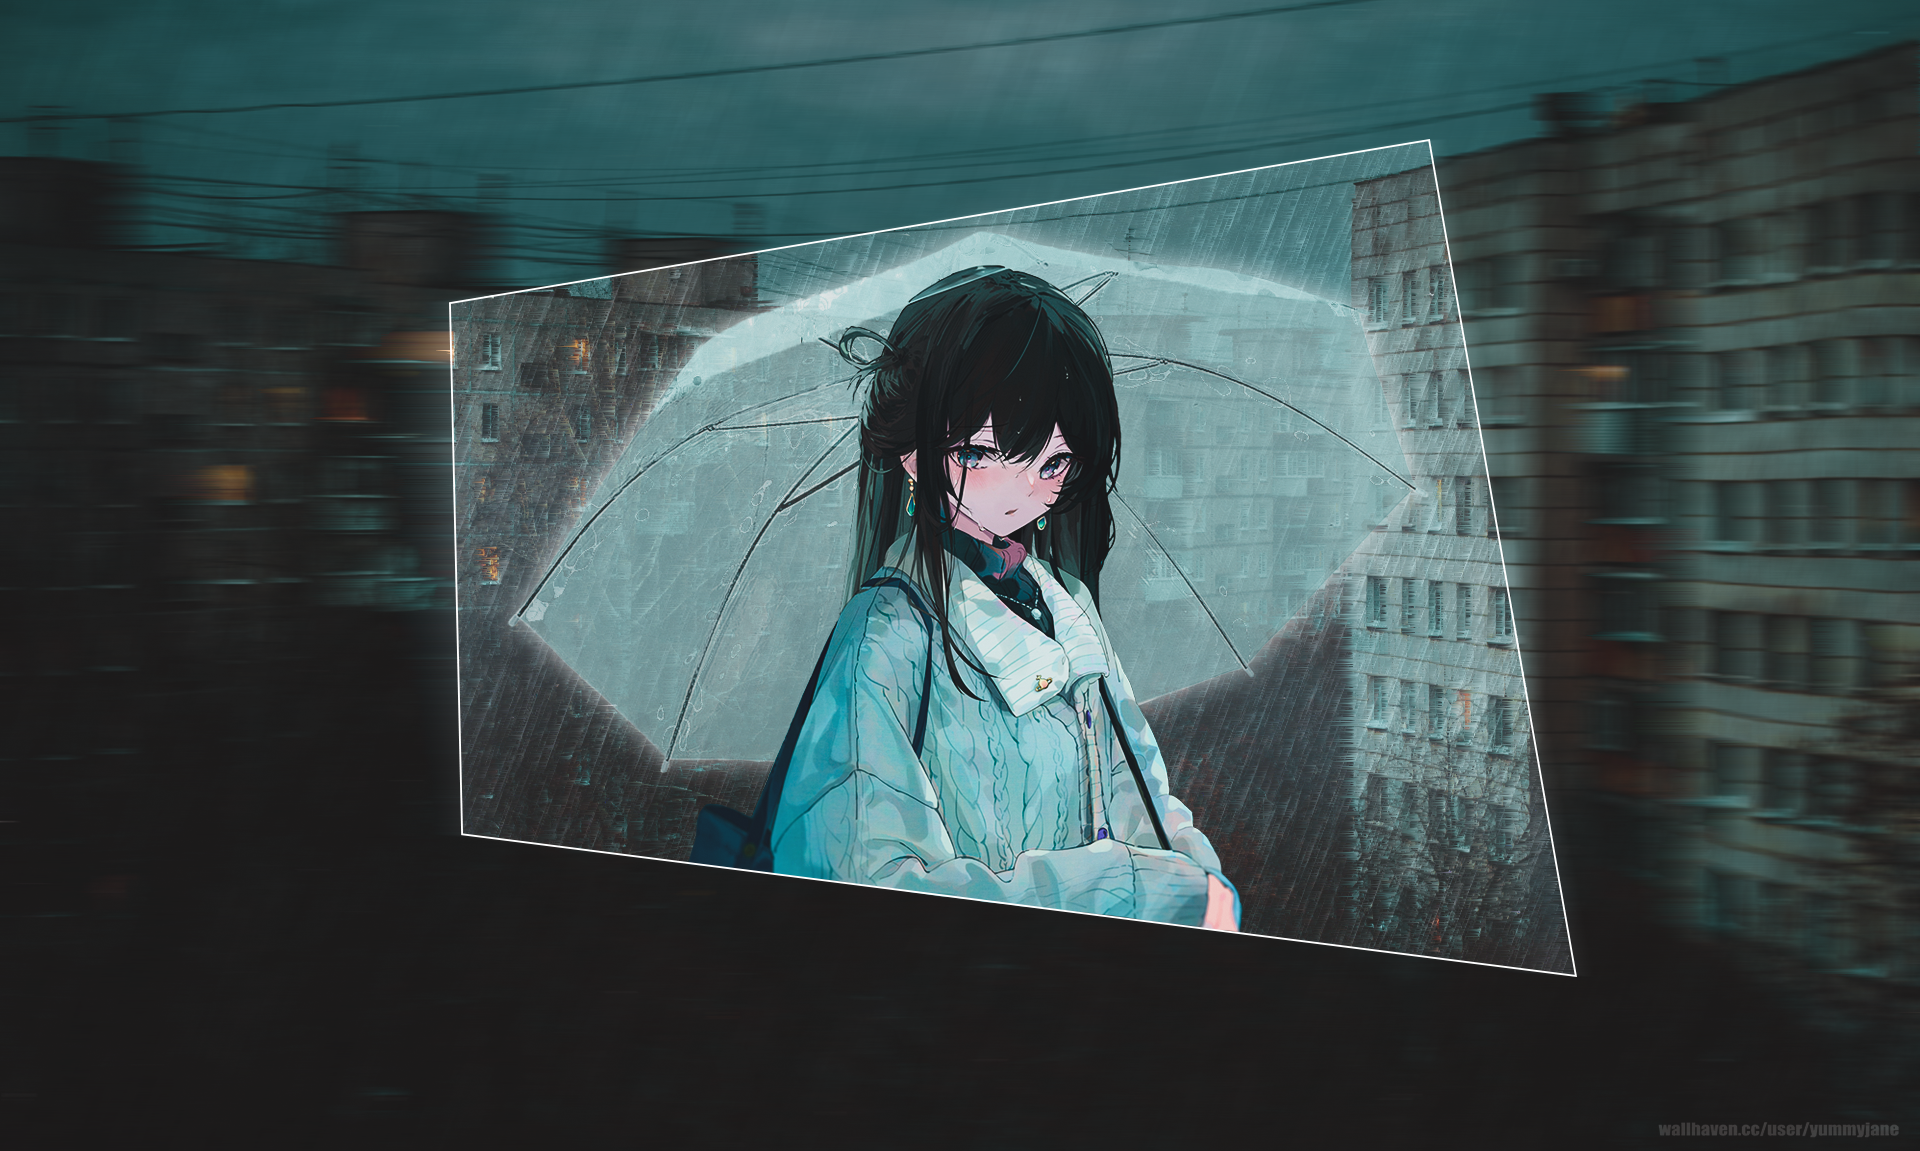 Anime Scenery Wallpaper Rain Cool Backgrounds  Anime Scener  Flickr